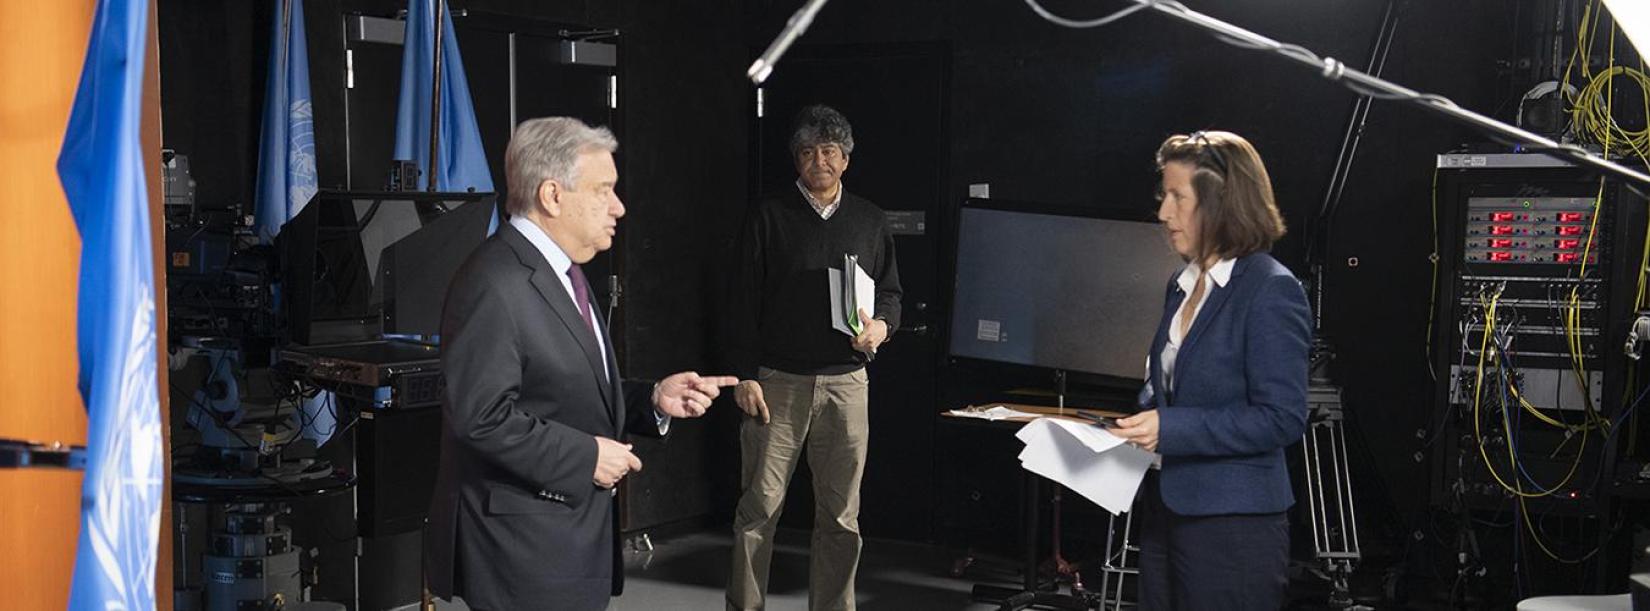 El Secretario General António Guterres habla con la Secretaria General Adjunta del Departamento de Comunicación Global, en el estudio de Televisión y Vídeo de la ONU, antes de dar comienzo a una rueda de prensa virtual sobre el COVID-19. 